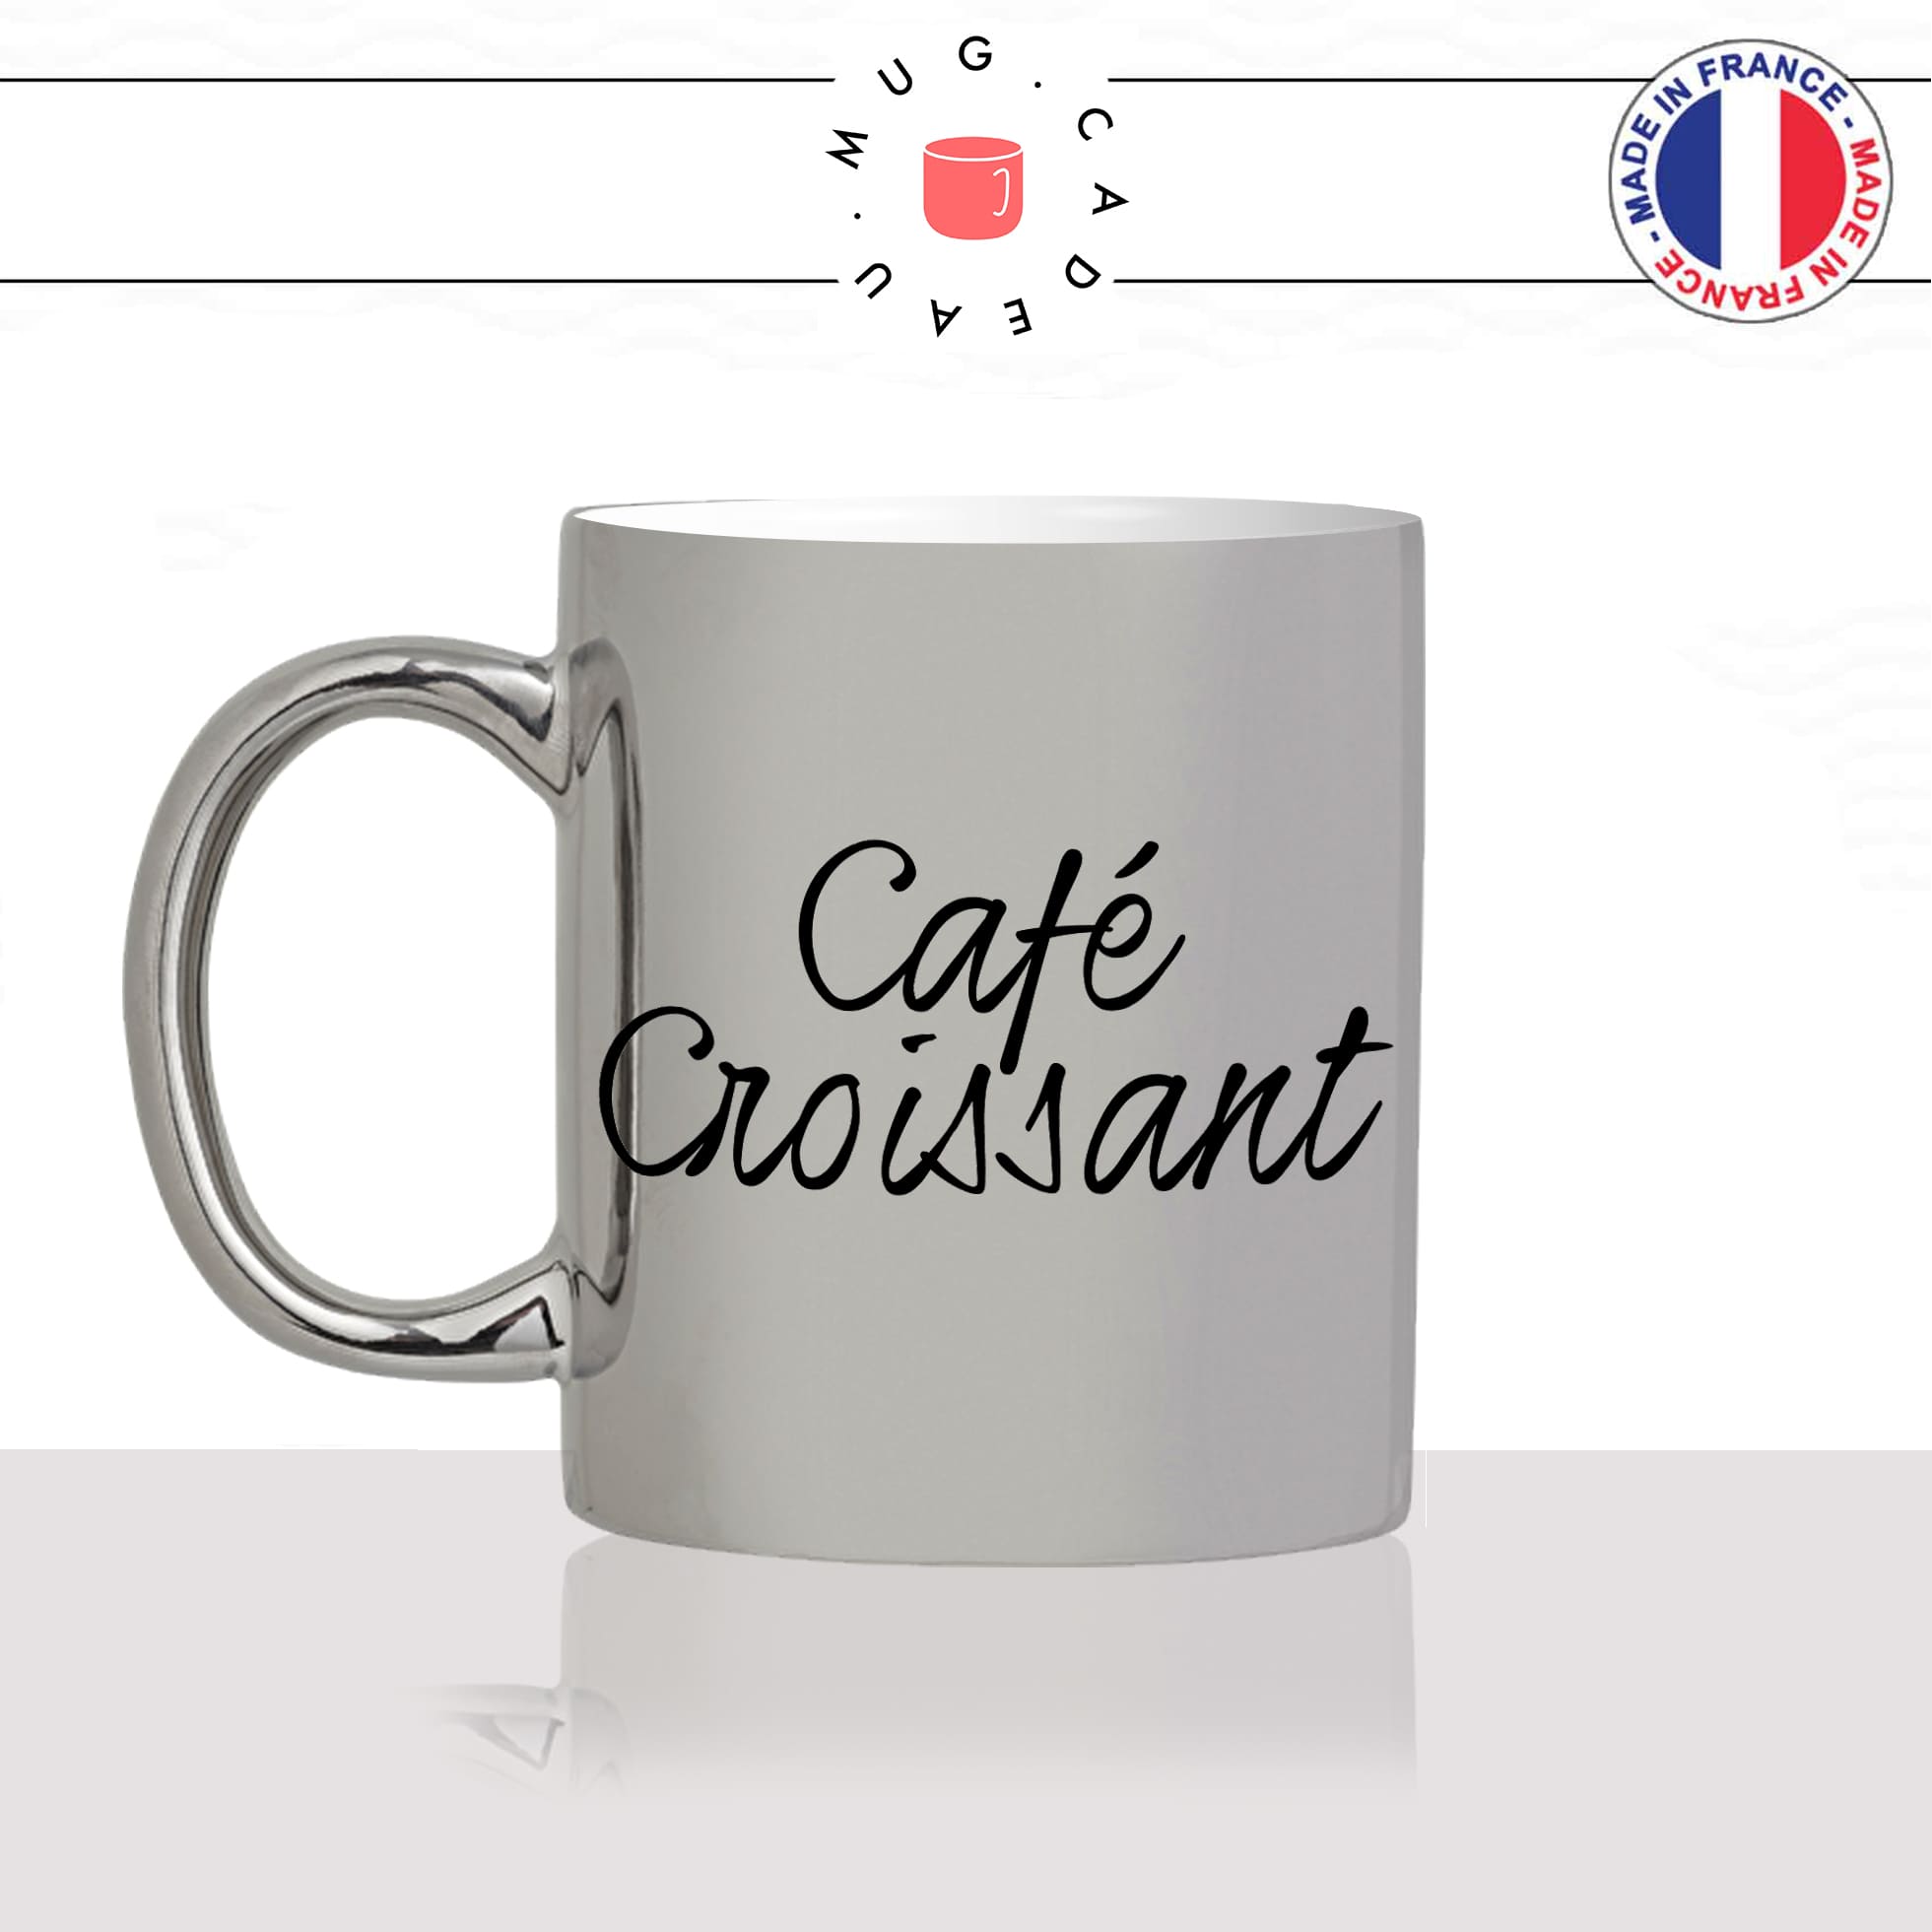 mug-tasse-argenté-argent-gris-silver-cafe-croissant-matin-reveil-vienoiserie-homme-femme-collegue-humour-fun-cool-idée-cadeau-original